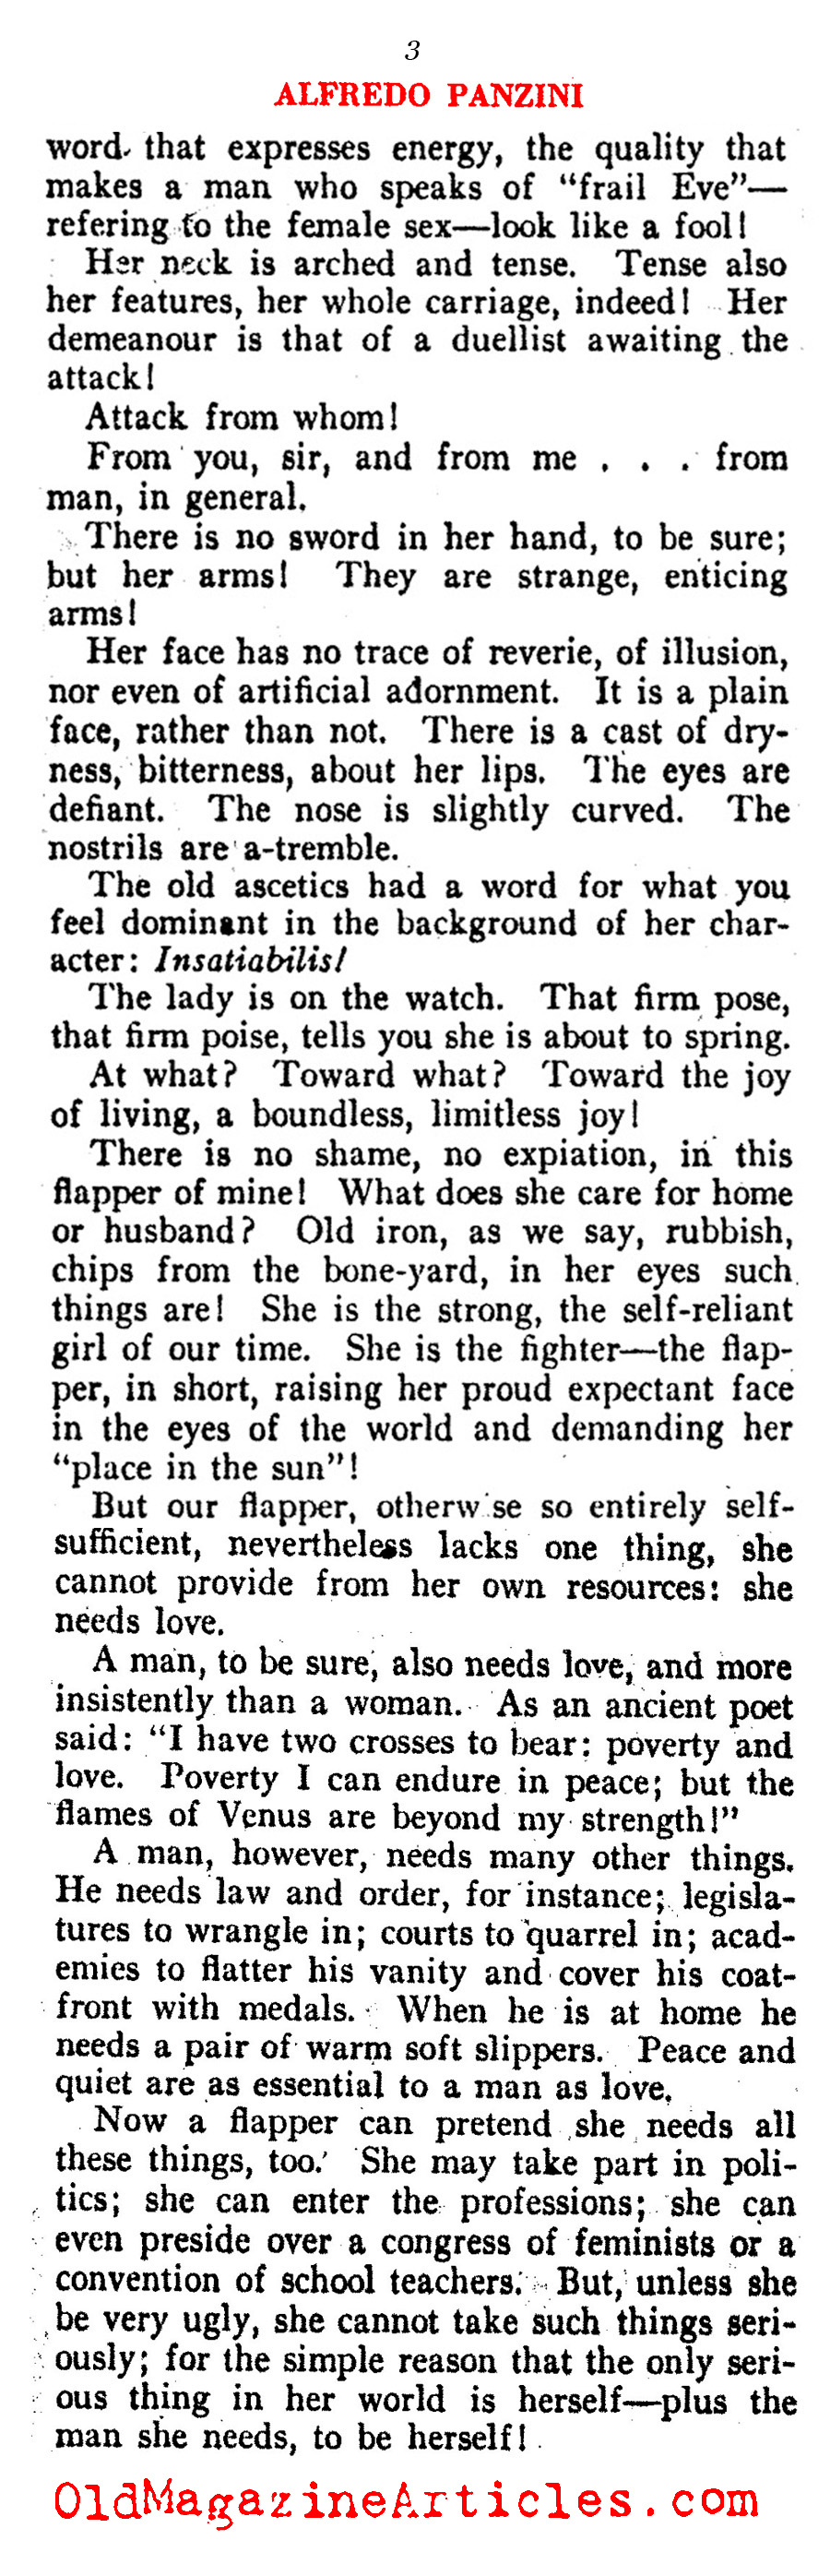 The Post-War Change in Women  (Vanity Fair, 1921)